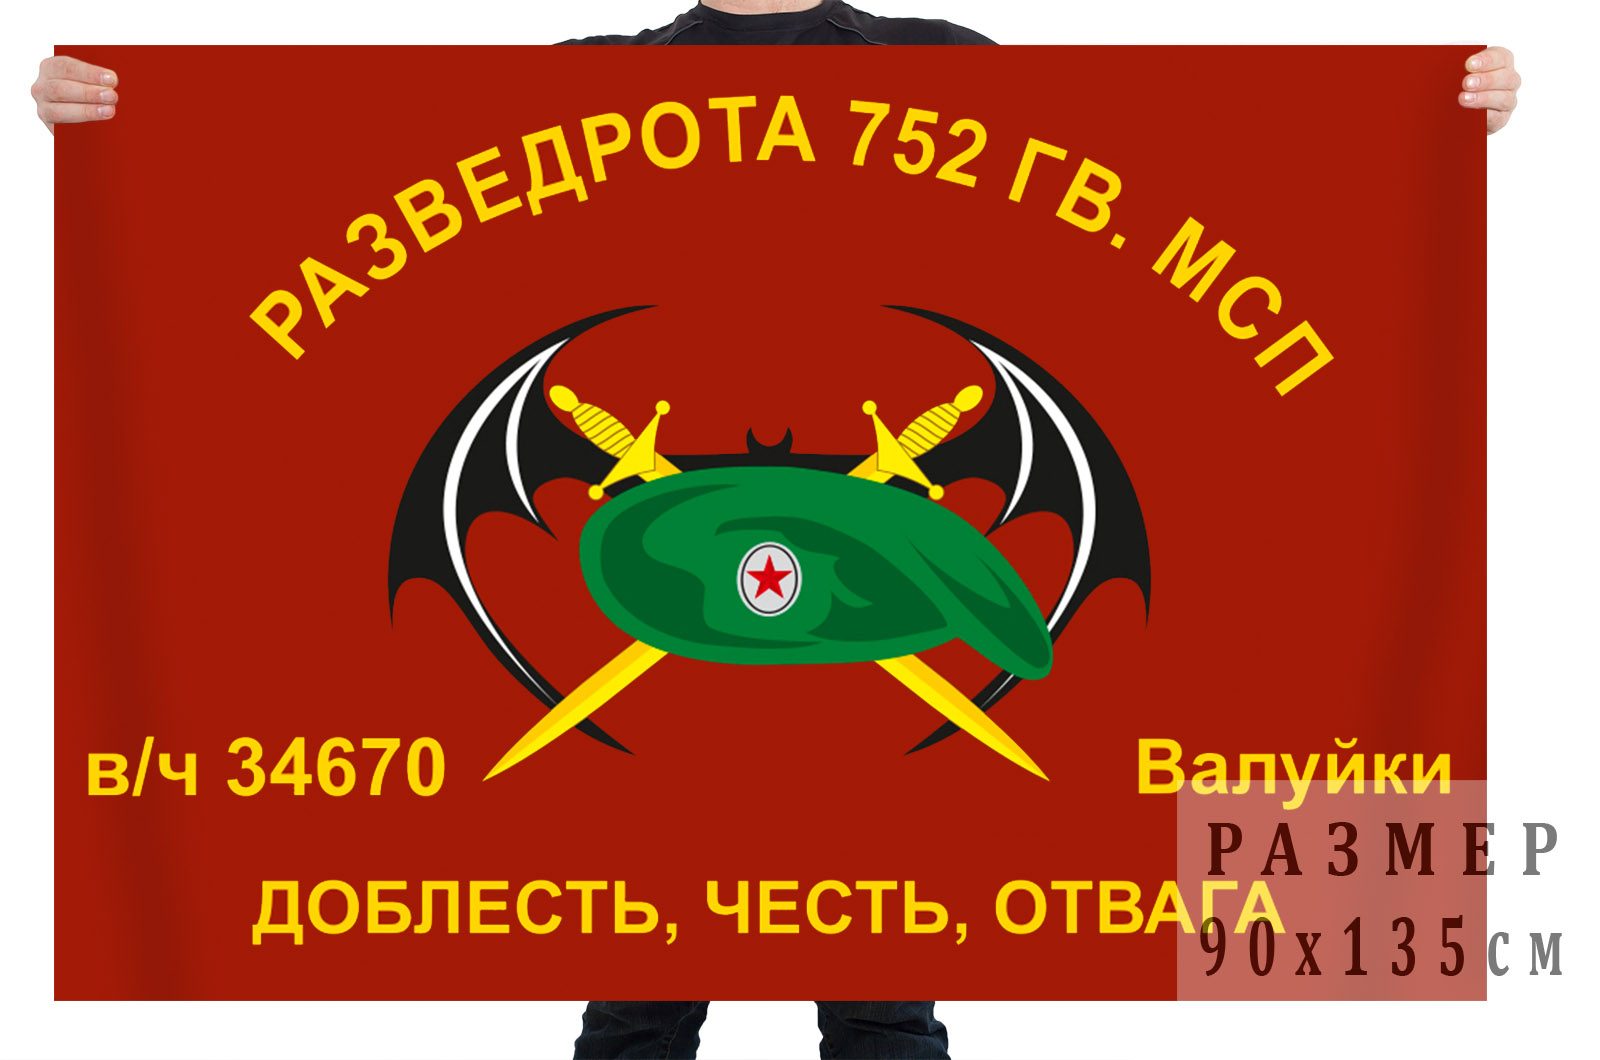 Флаг Разведроты 752 Гв. МСП (Валуйки)